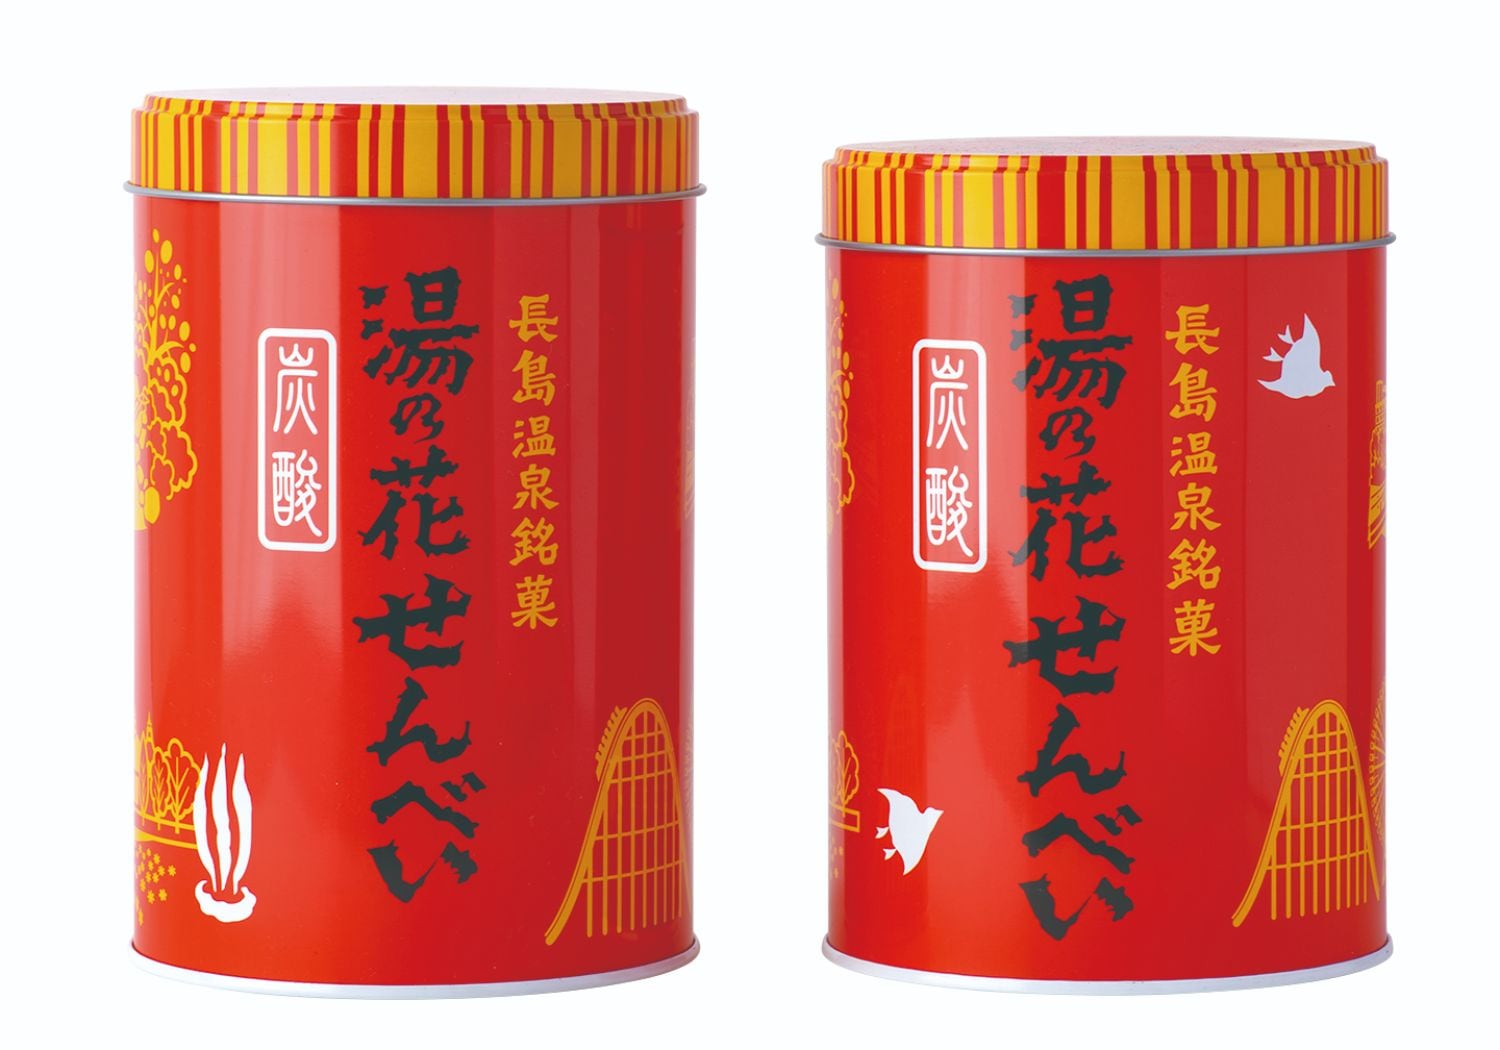 長島温泉でしか買えない赤い缶は、昭和39年から60年近く販売。2020年に発売当初入っていた縁起物の“千鳥”のイラストを復活させた。丸缶850円